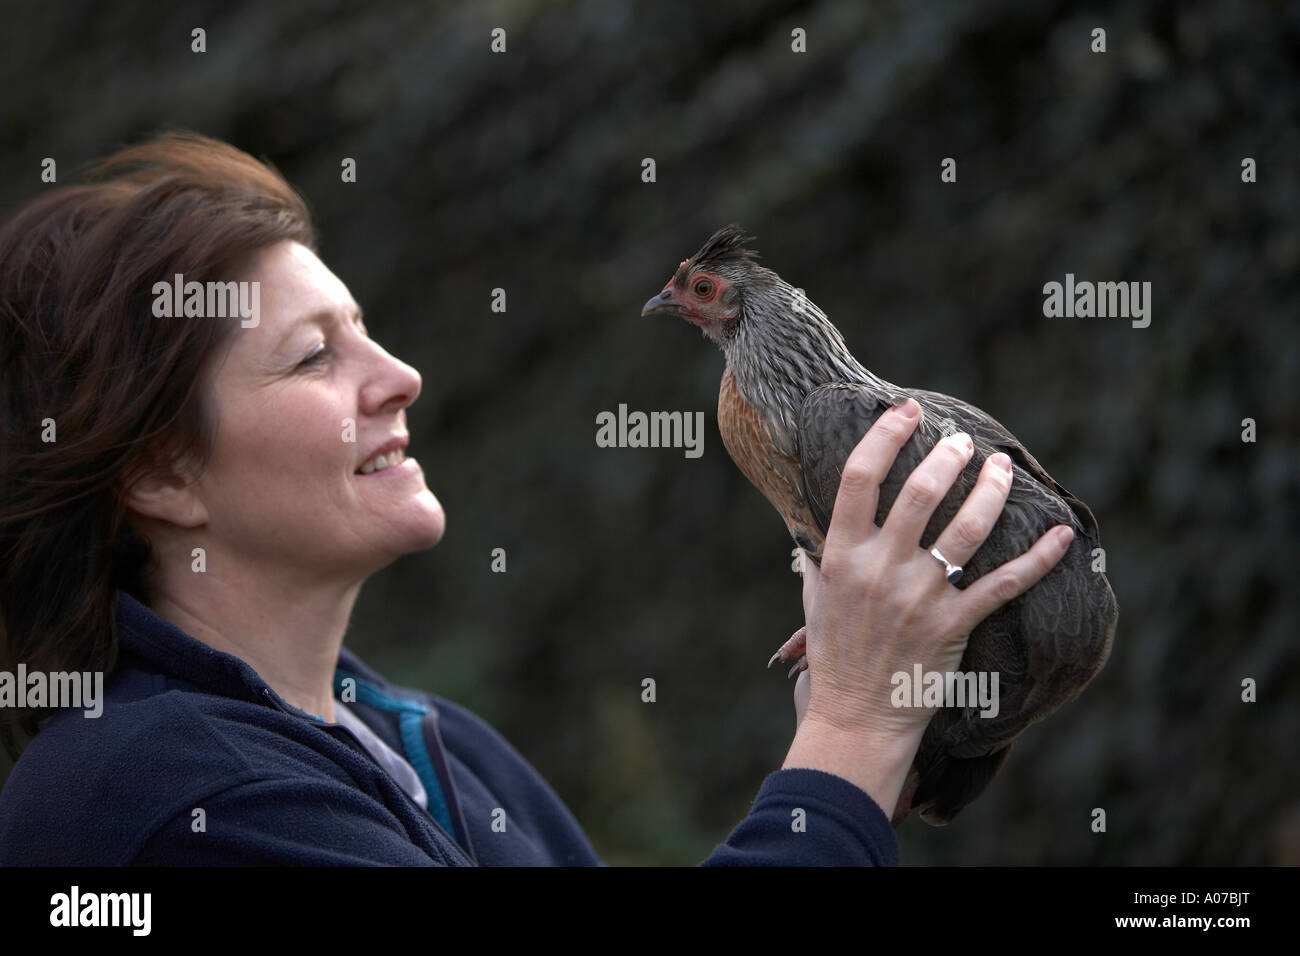 Landwirt in Händen Vogel in der Hand hält, ein Zwerg Huhn Stockfoto